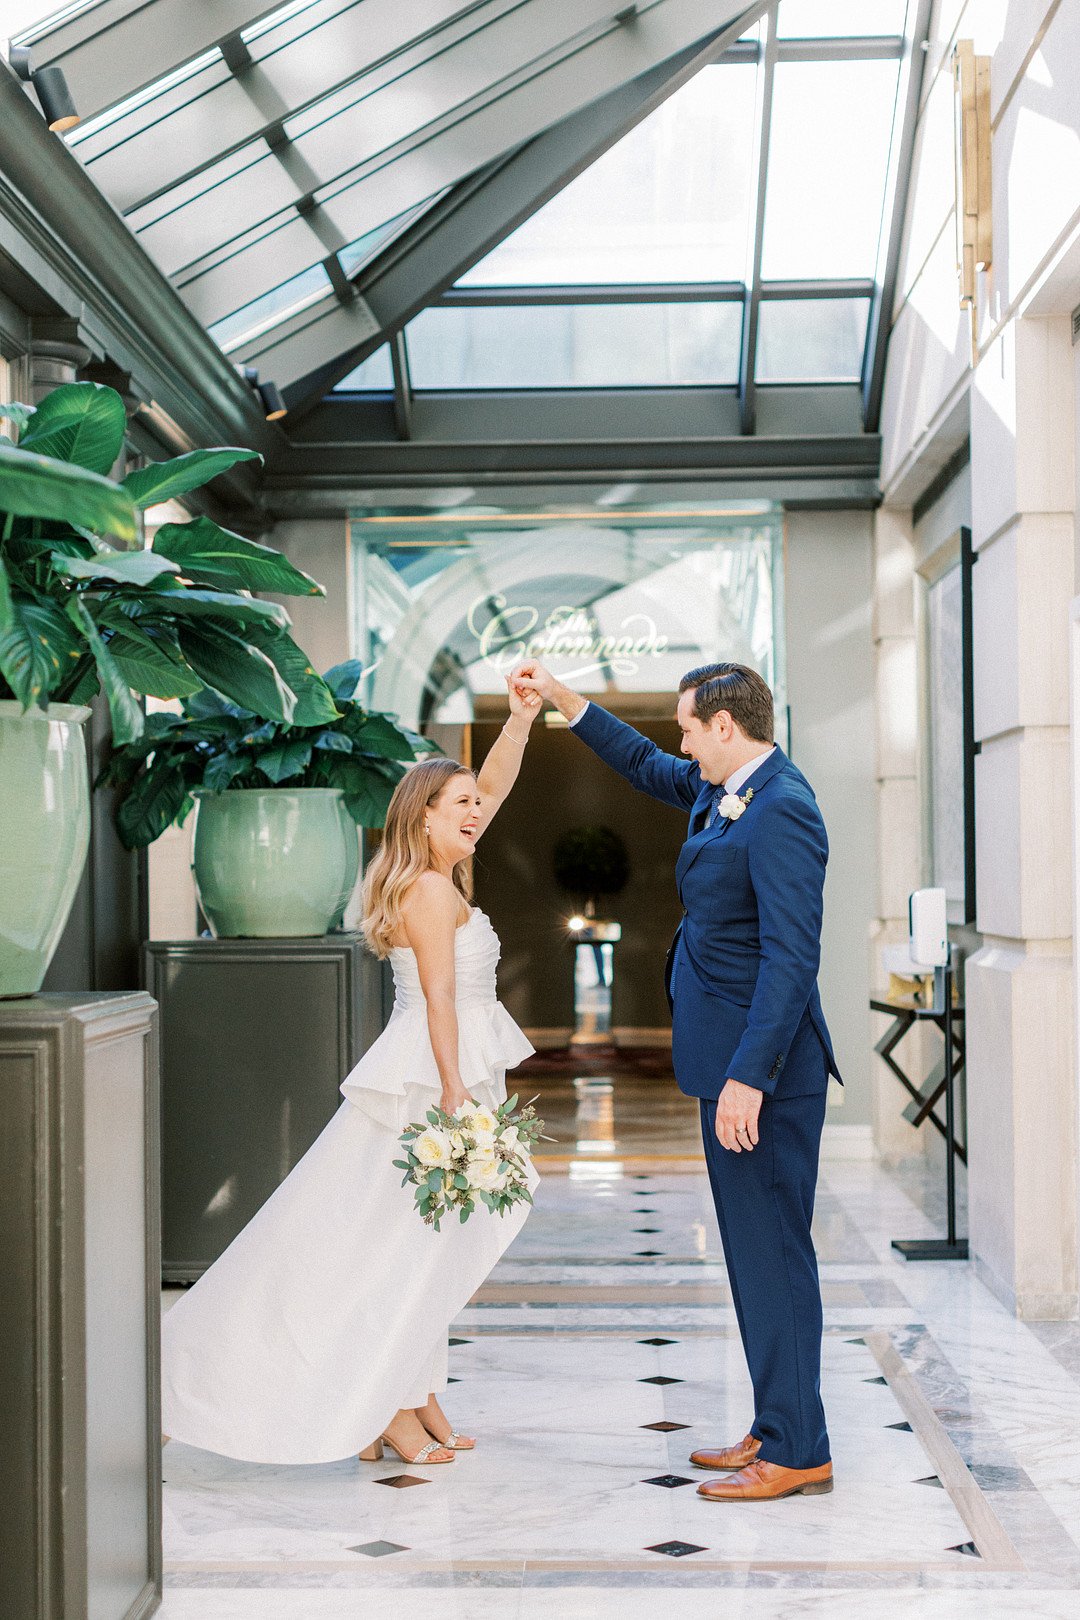 Ashley & Joel | Fairmont Hotel | Wedding Gallery